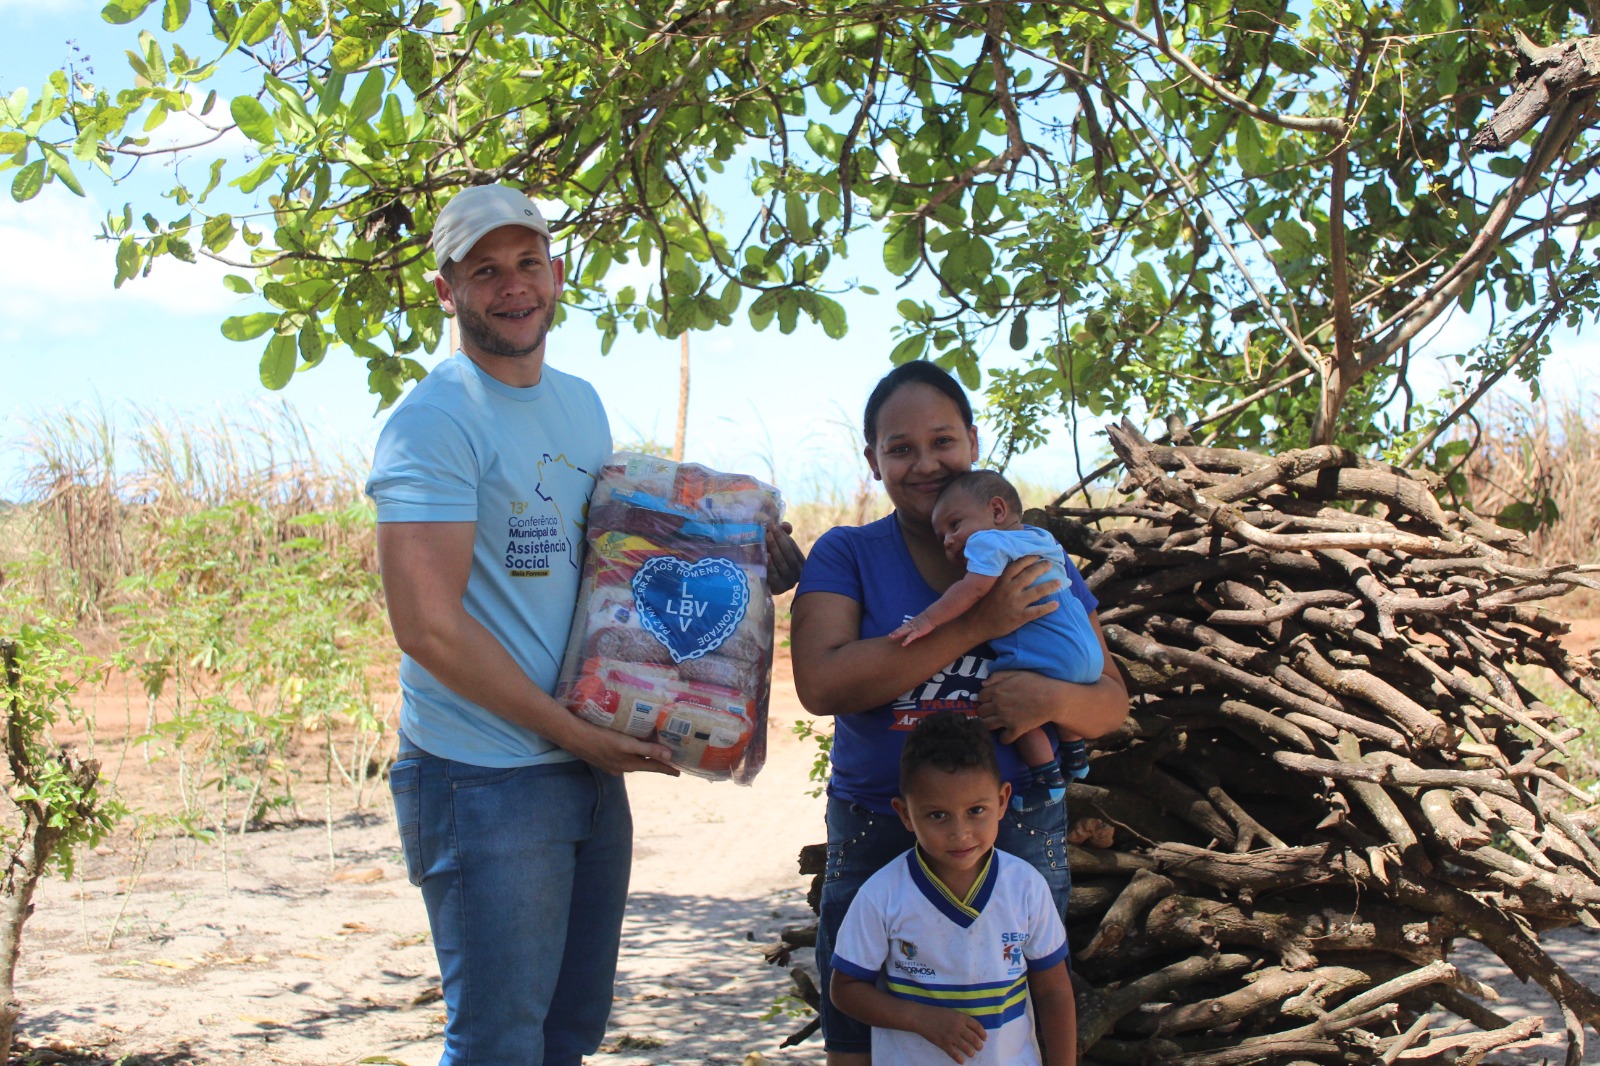 Ação natalina solidária da LBV conclui entrega de cestas de alimentos a famílias carentes neste Natal no RN